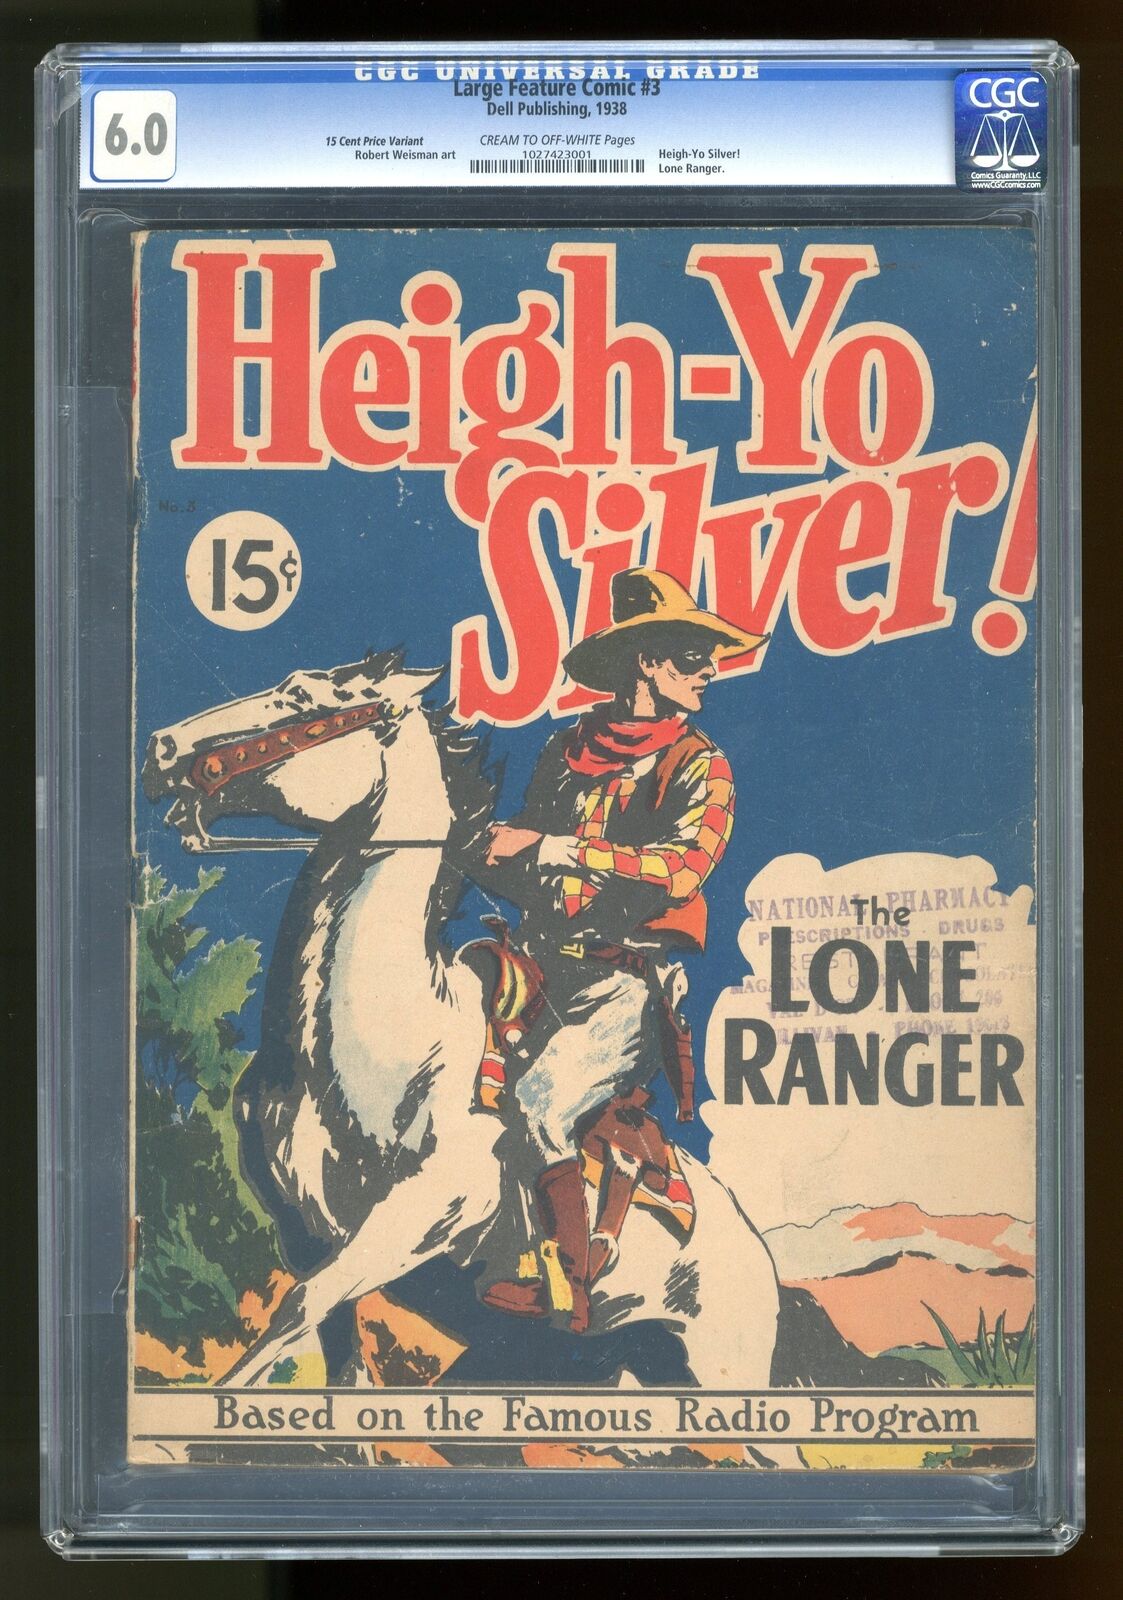 Lone Ranger Large Feature Comic #3 CGC 6.0 15c Price Variant 1027423001